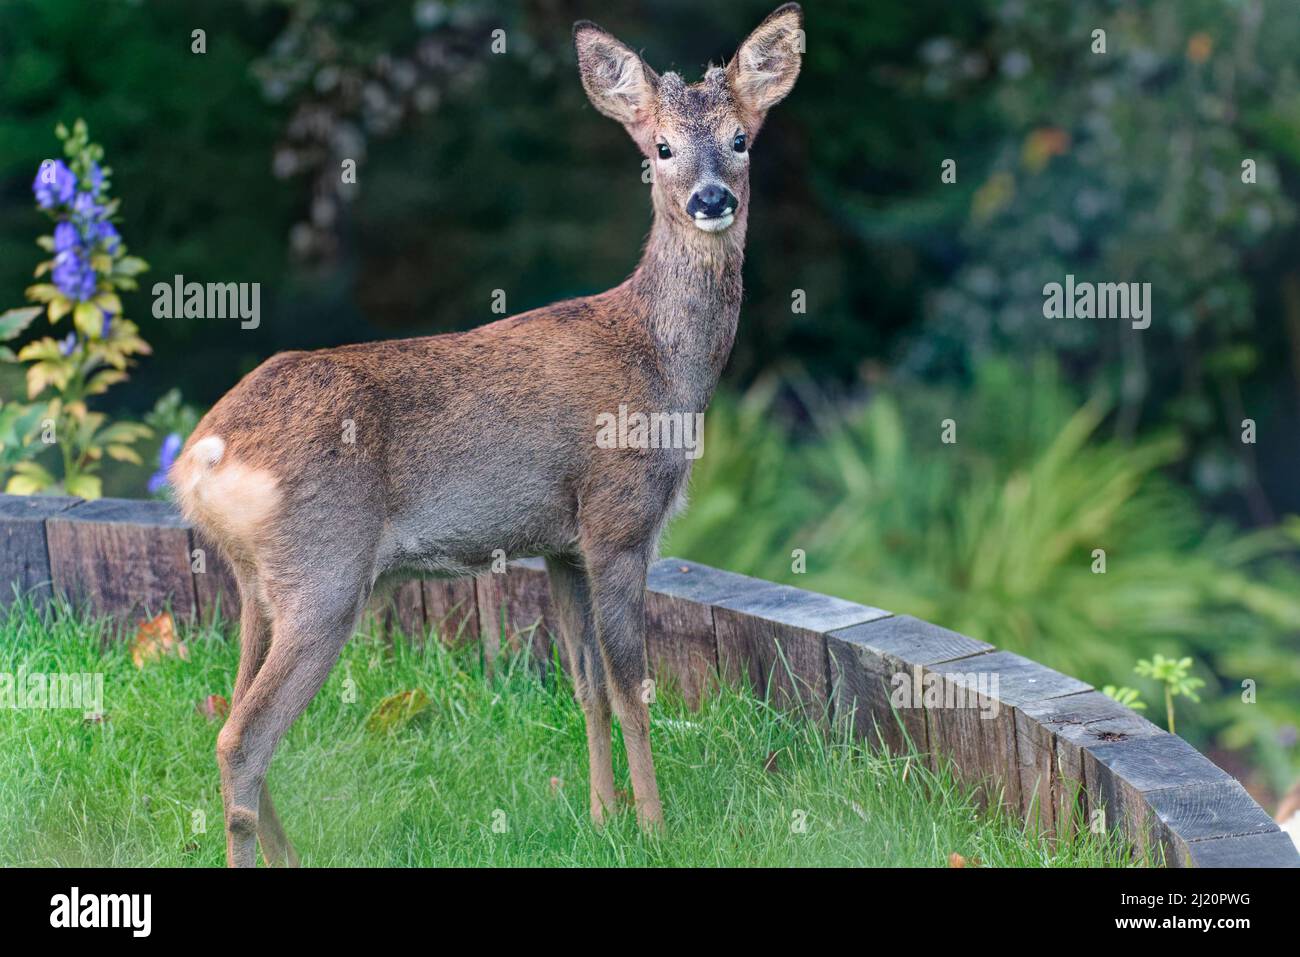 Alertez les jeunes cerfs de Virginie (Capranolus capranolus) avec des cornes en développement debout sur une pelouse de jardin en terrasse, jardin Wiltshire, Royaume-Uni, octobre. Banque D'Images